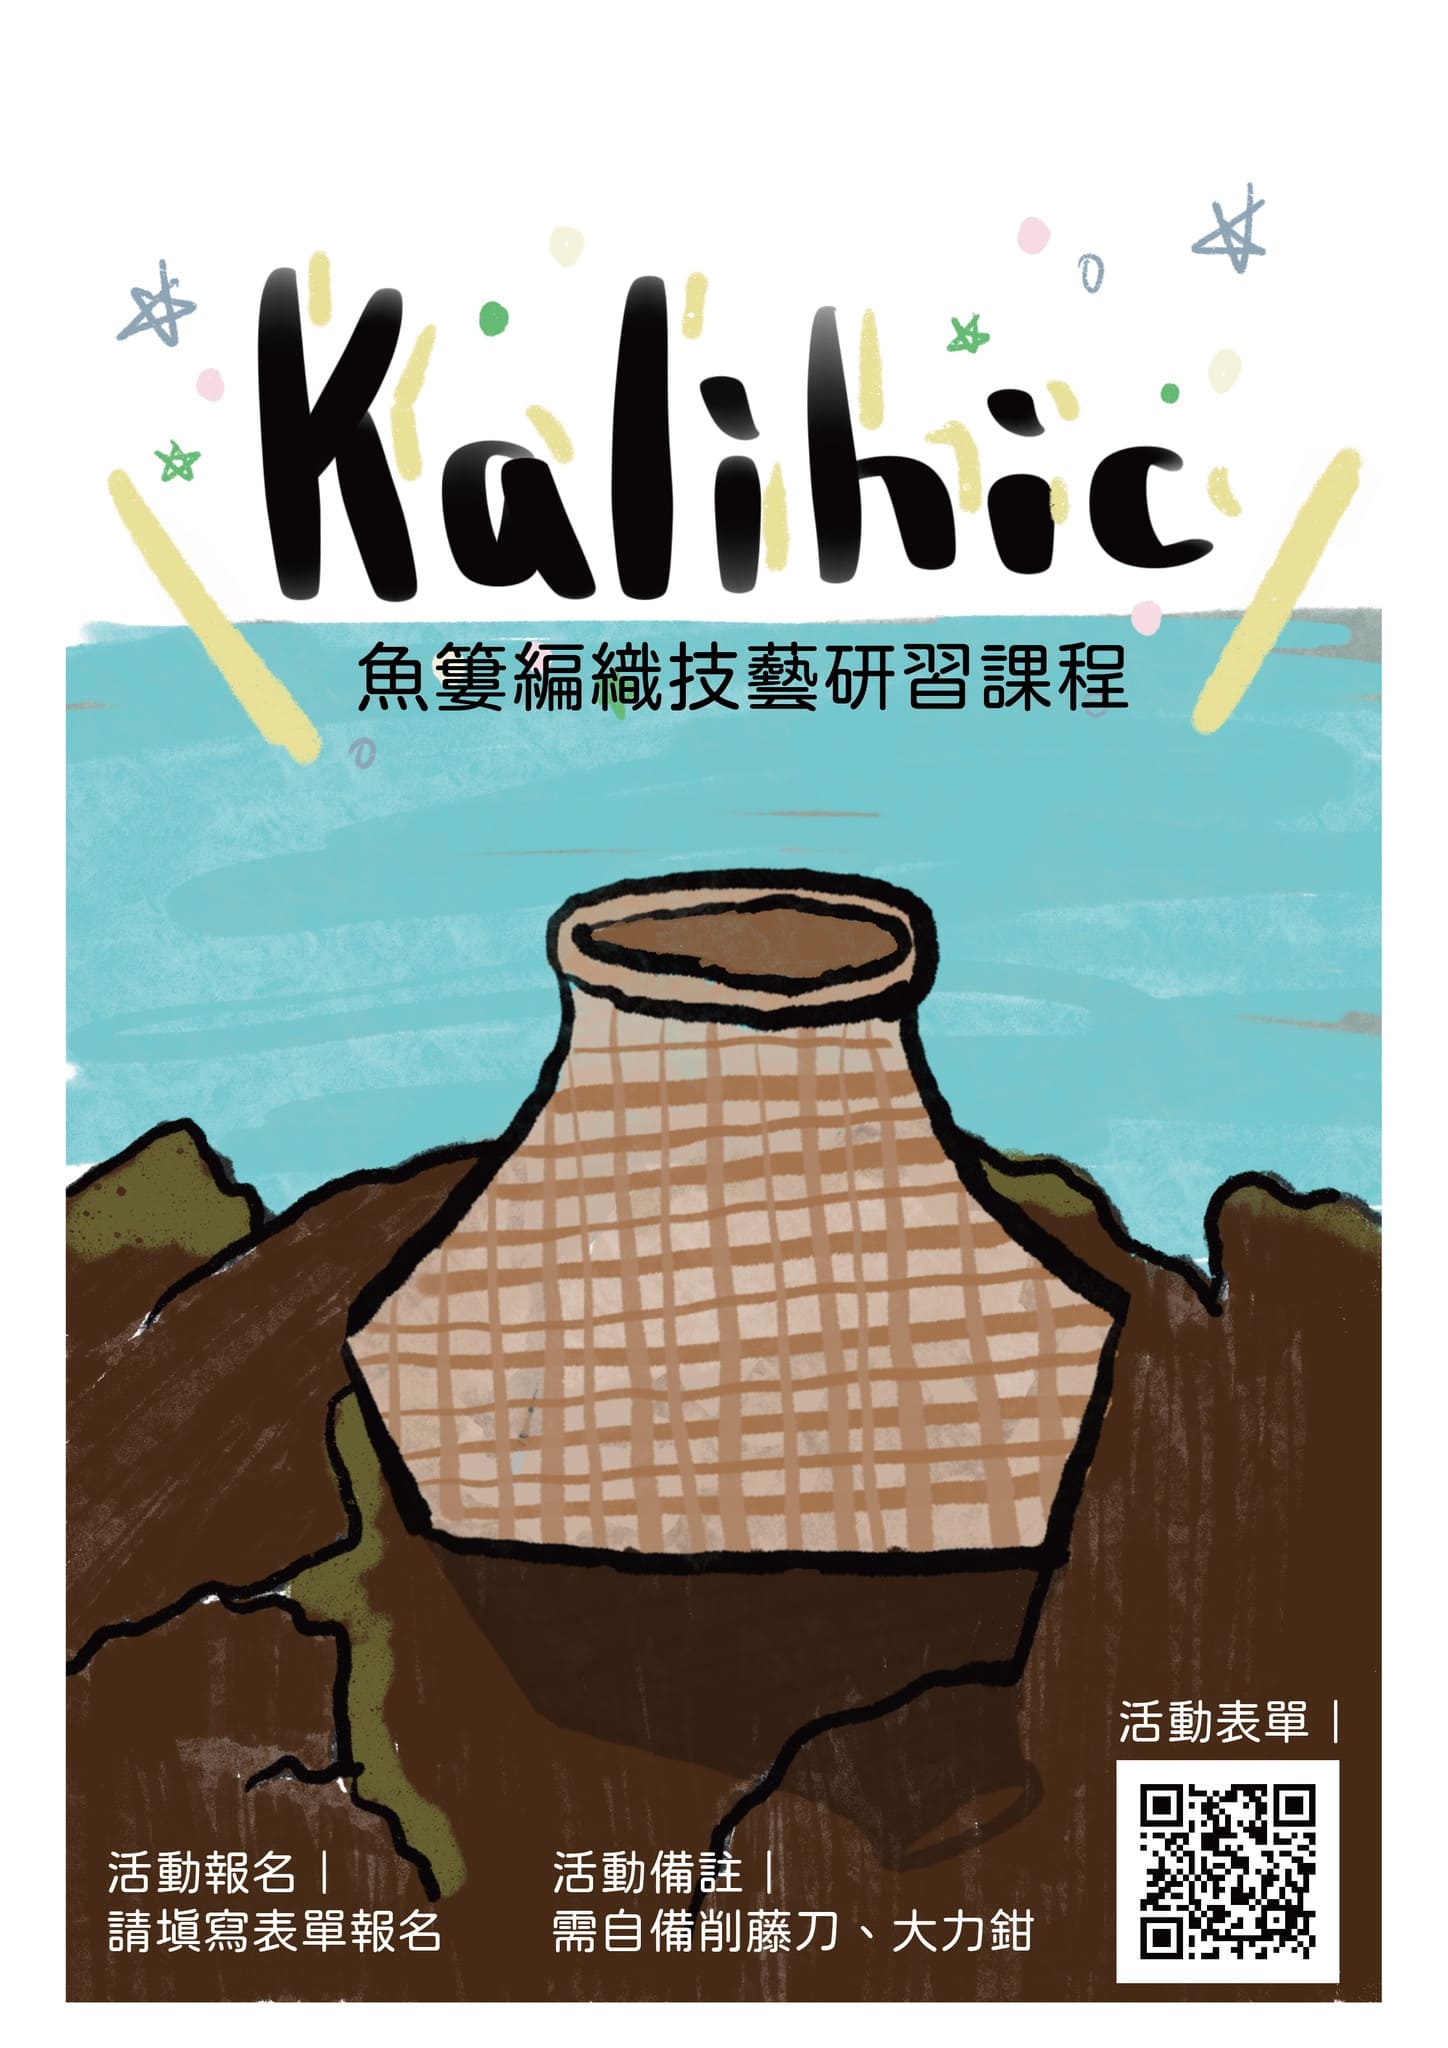 kalihic編織魚簍課程圖片321